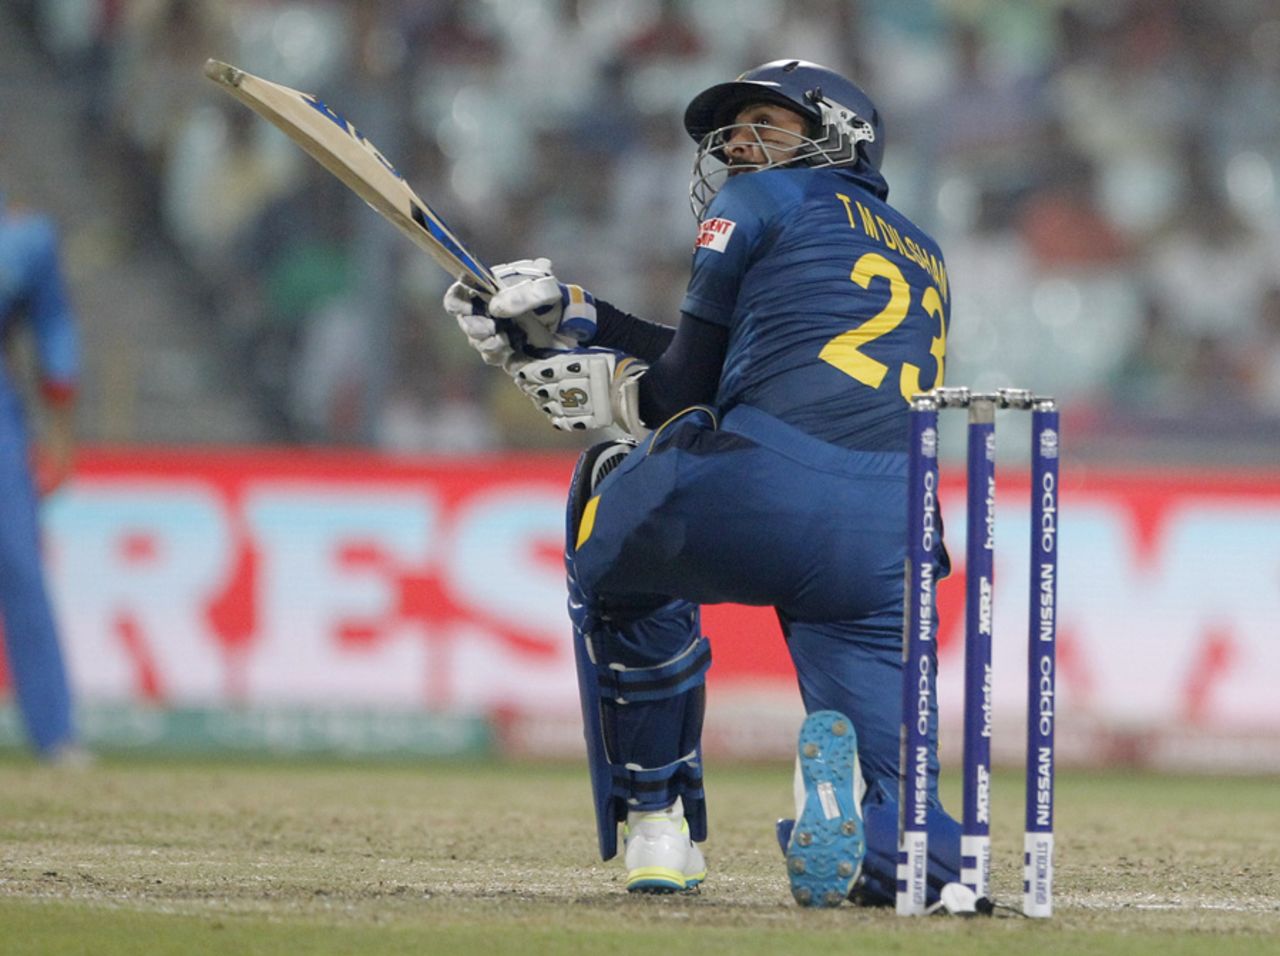 Tillakaratne Dilshan plays his trademark scoop shot, Afghanistan v Sri Lanka, World T20 2016, Group 1, Kolkata